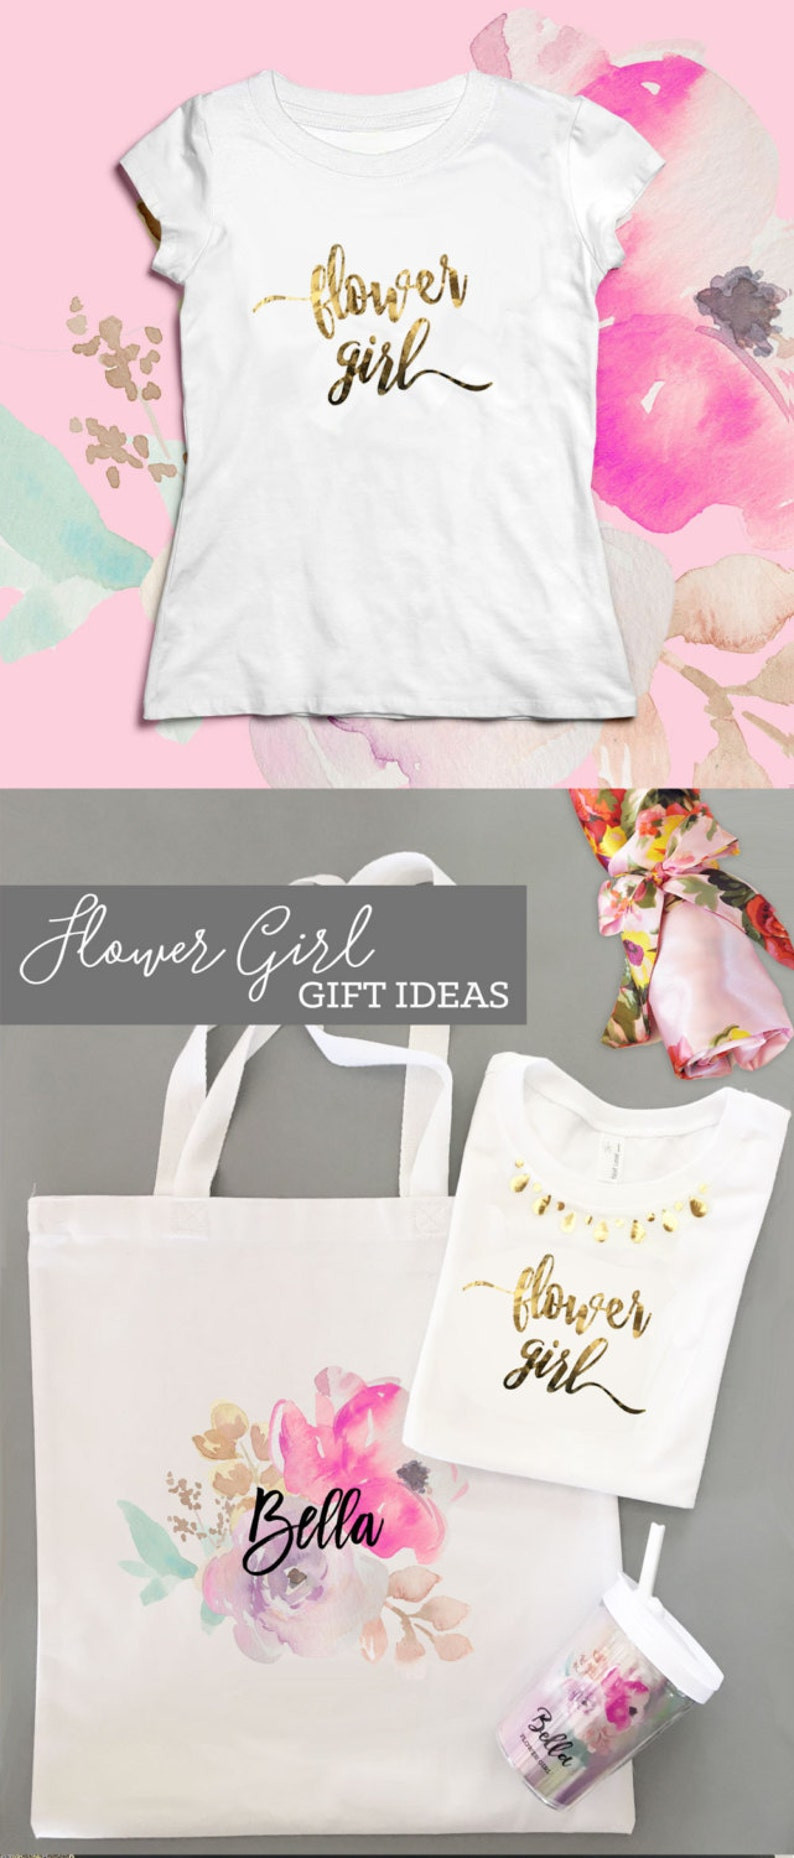 Gift Ideas For Flower Girls
 Flower Girl Gift Ideas Flower Girl Tumbler Flower Girl Cup